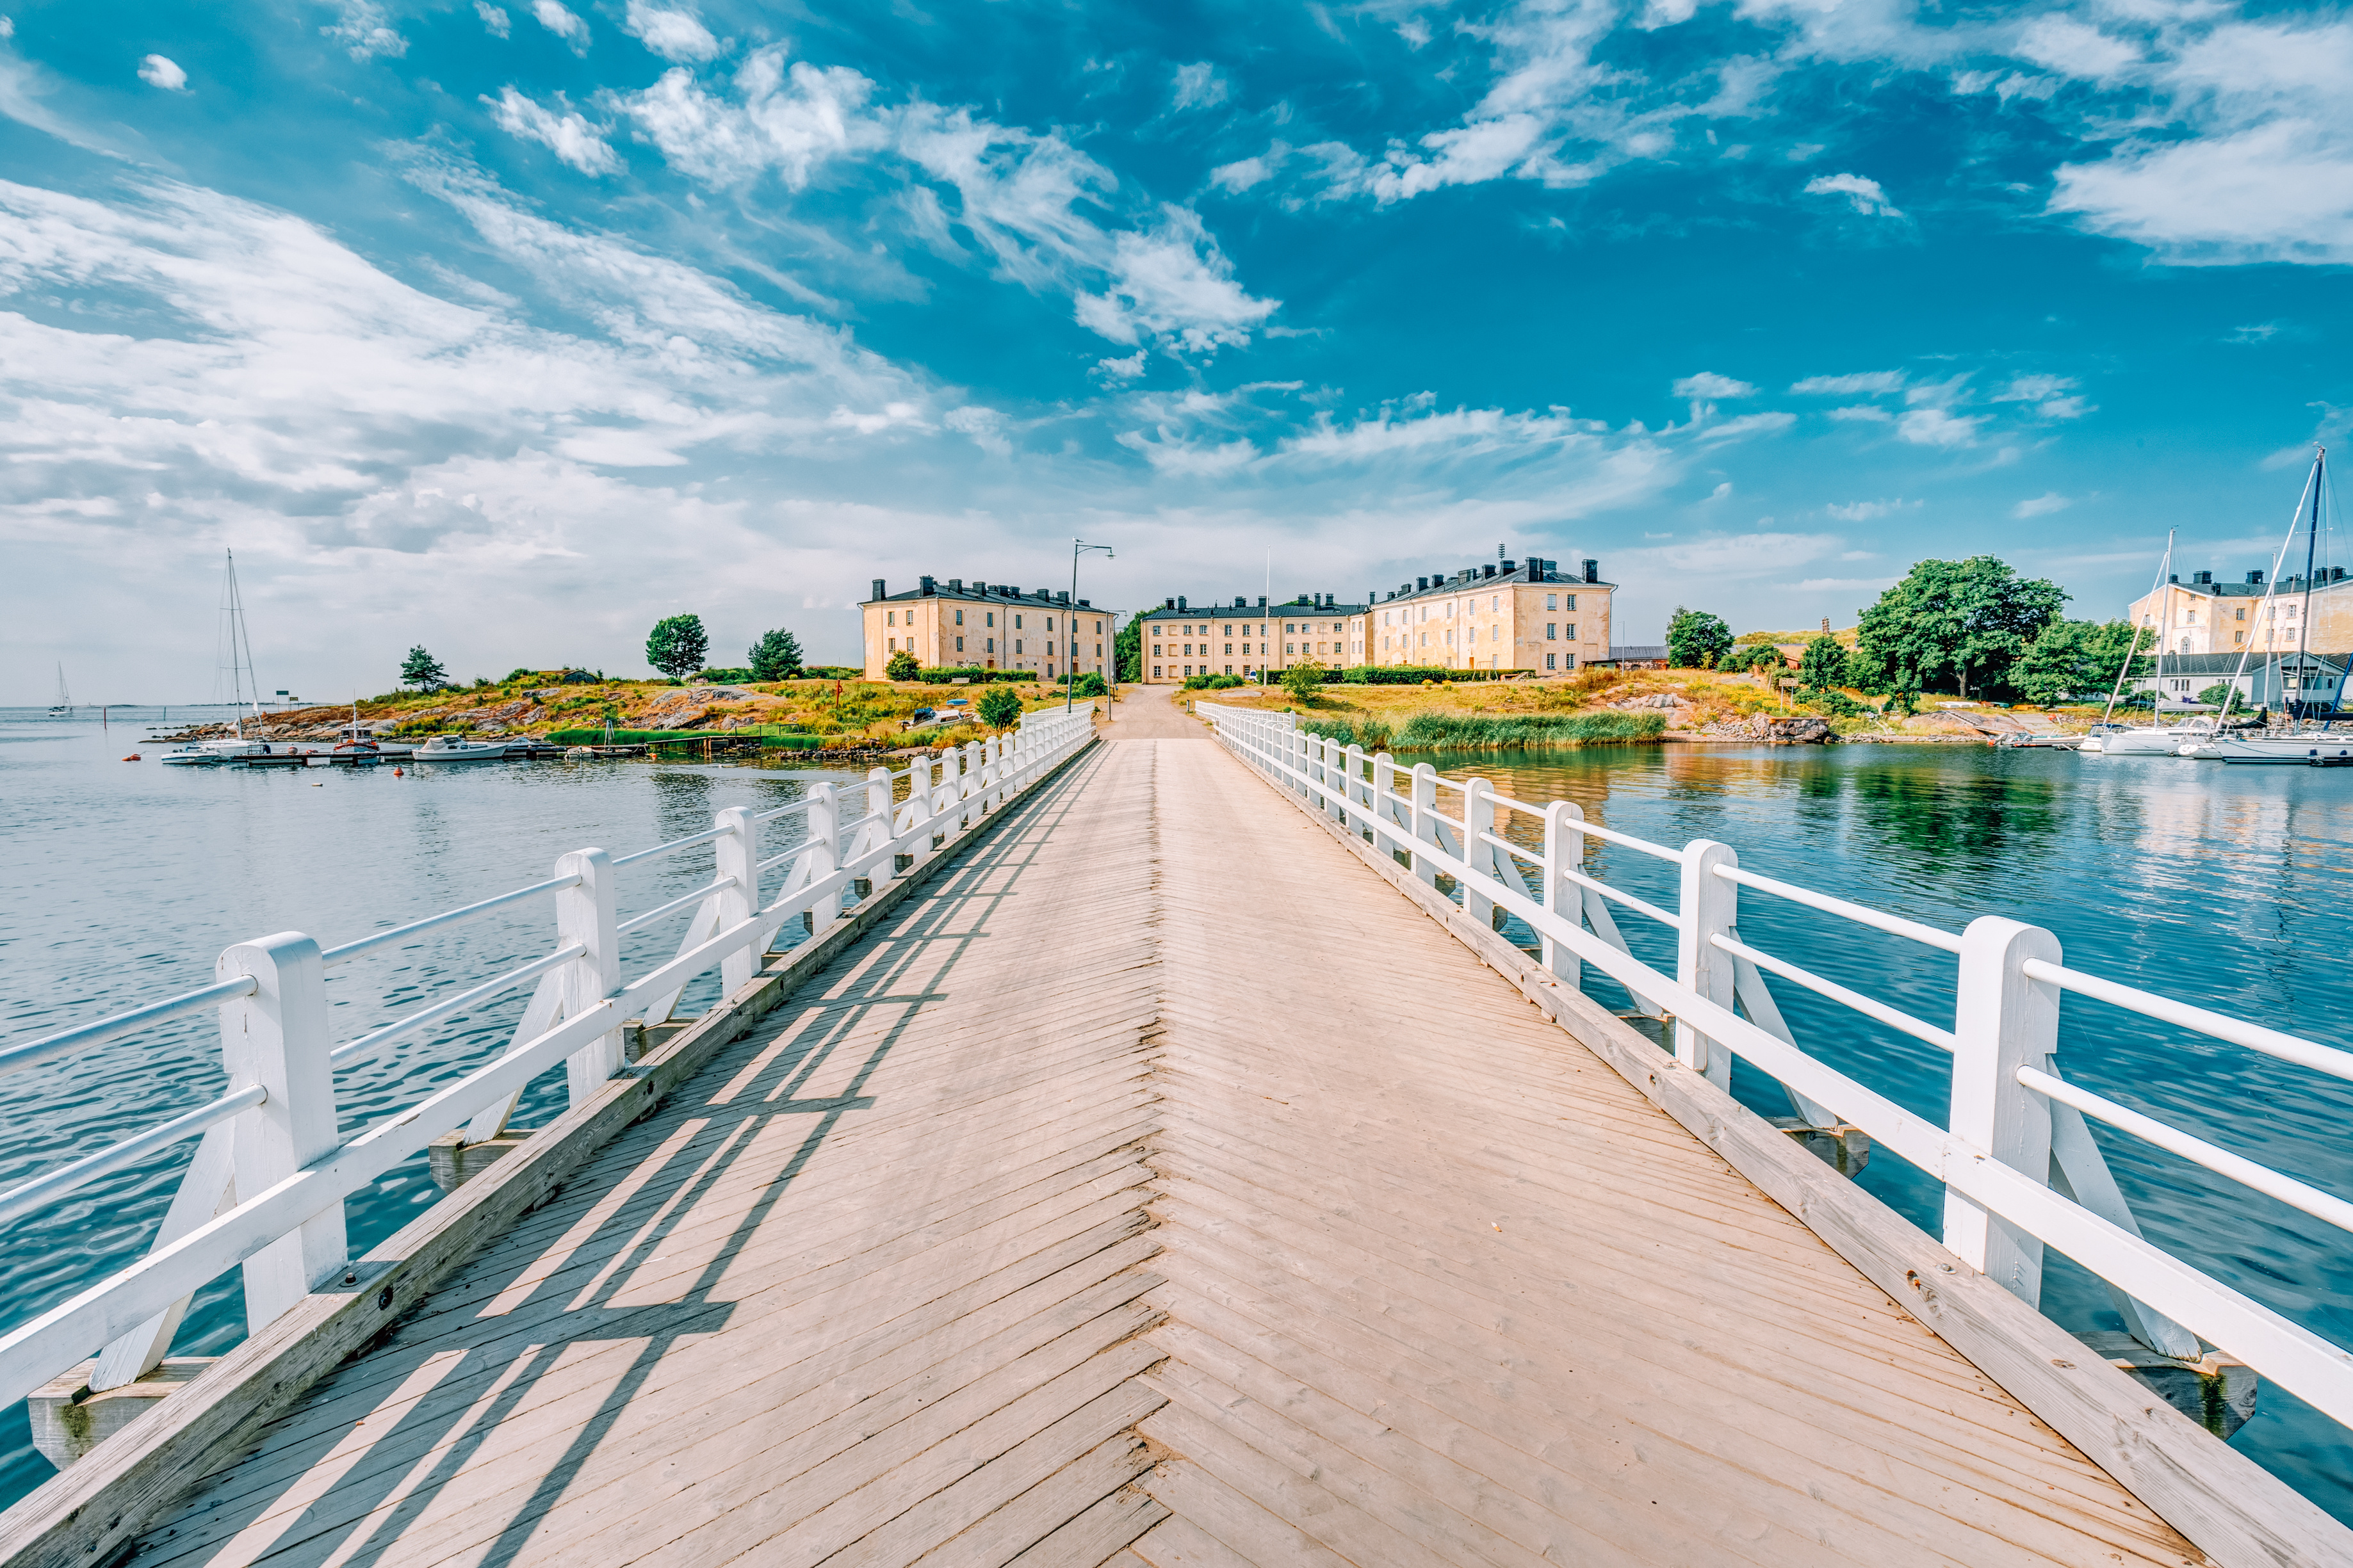 A bridge leading to the Suomenlinna fortress